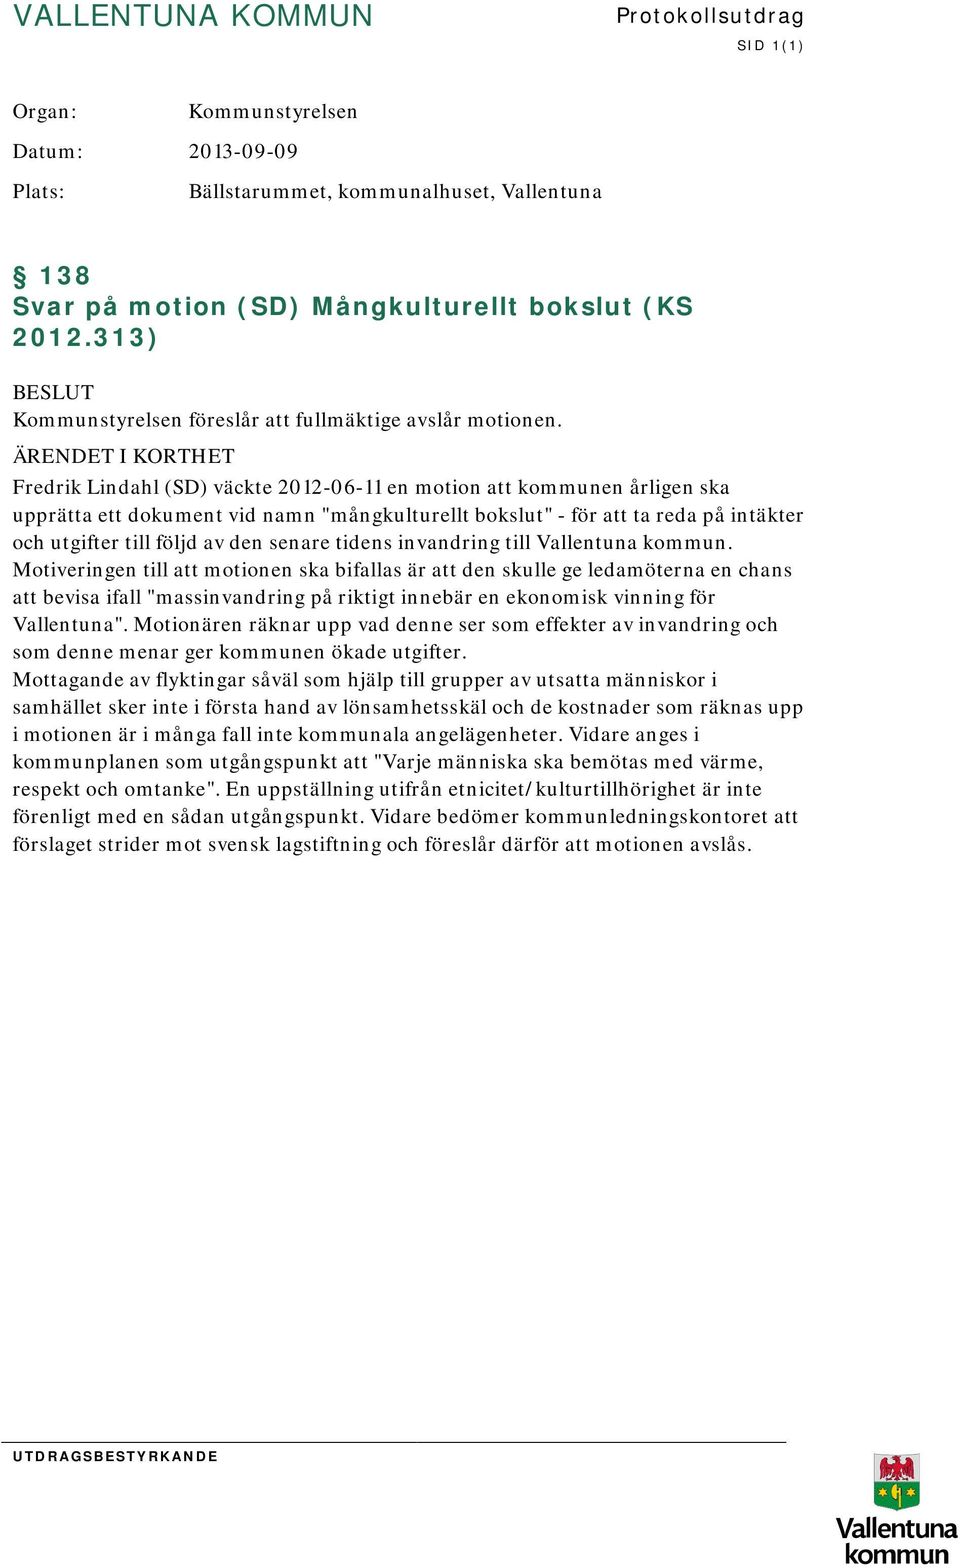 ÄRENDET I KORTHET Fredrik Lindahl (SD) väckte 2012-06-11 en motion att kommunen årligen ska upprätta ett dokument vid namn "mångkulturellt bokslut" - för att ta reda på intäkter och utgifter till